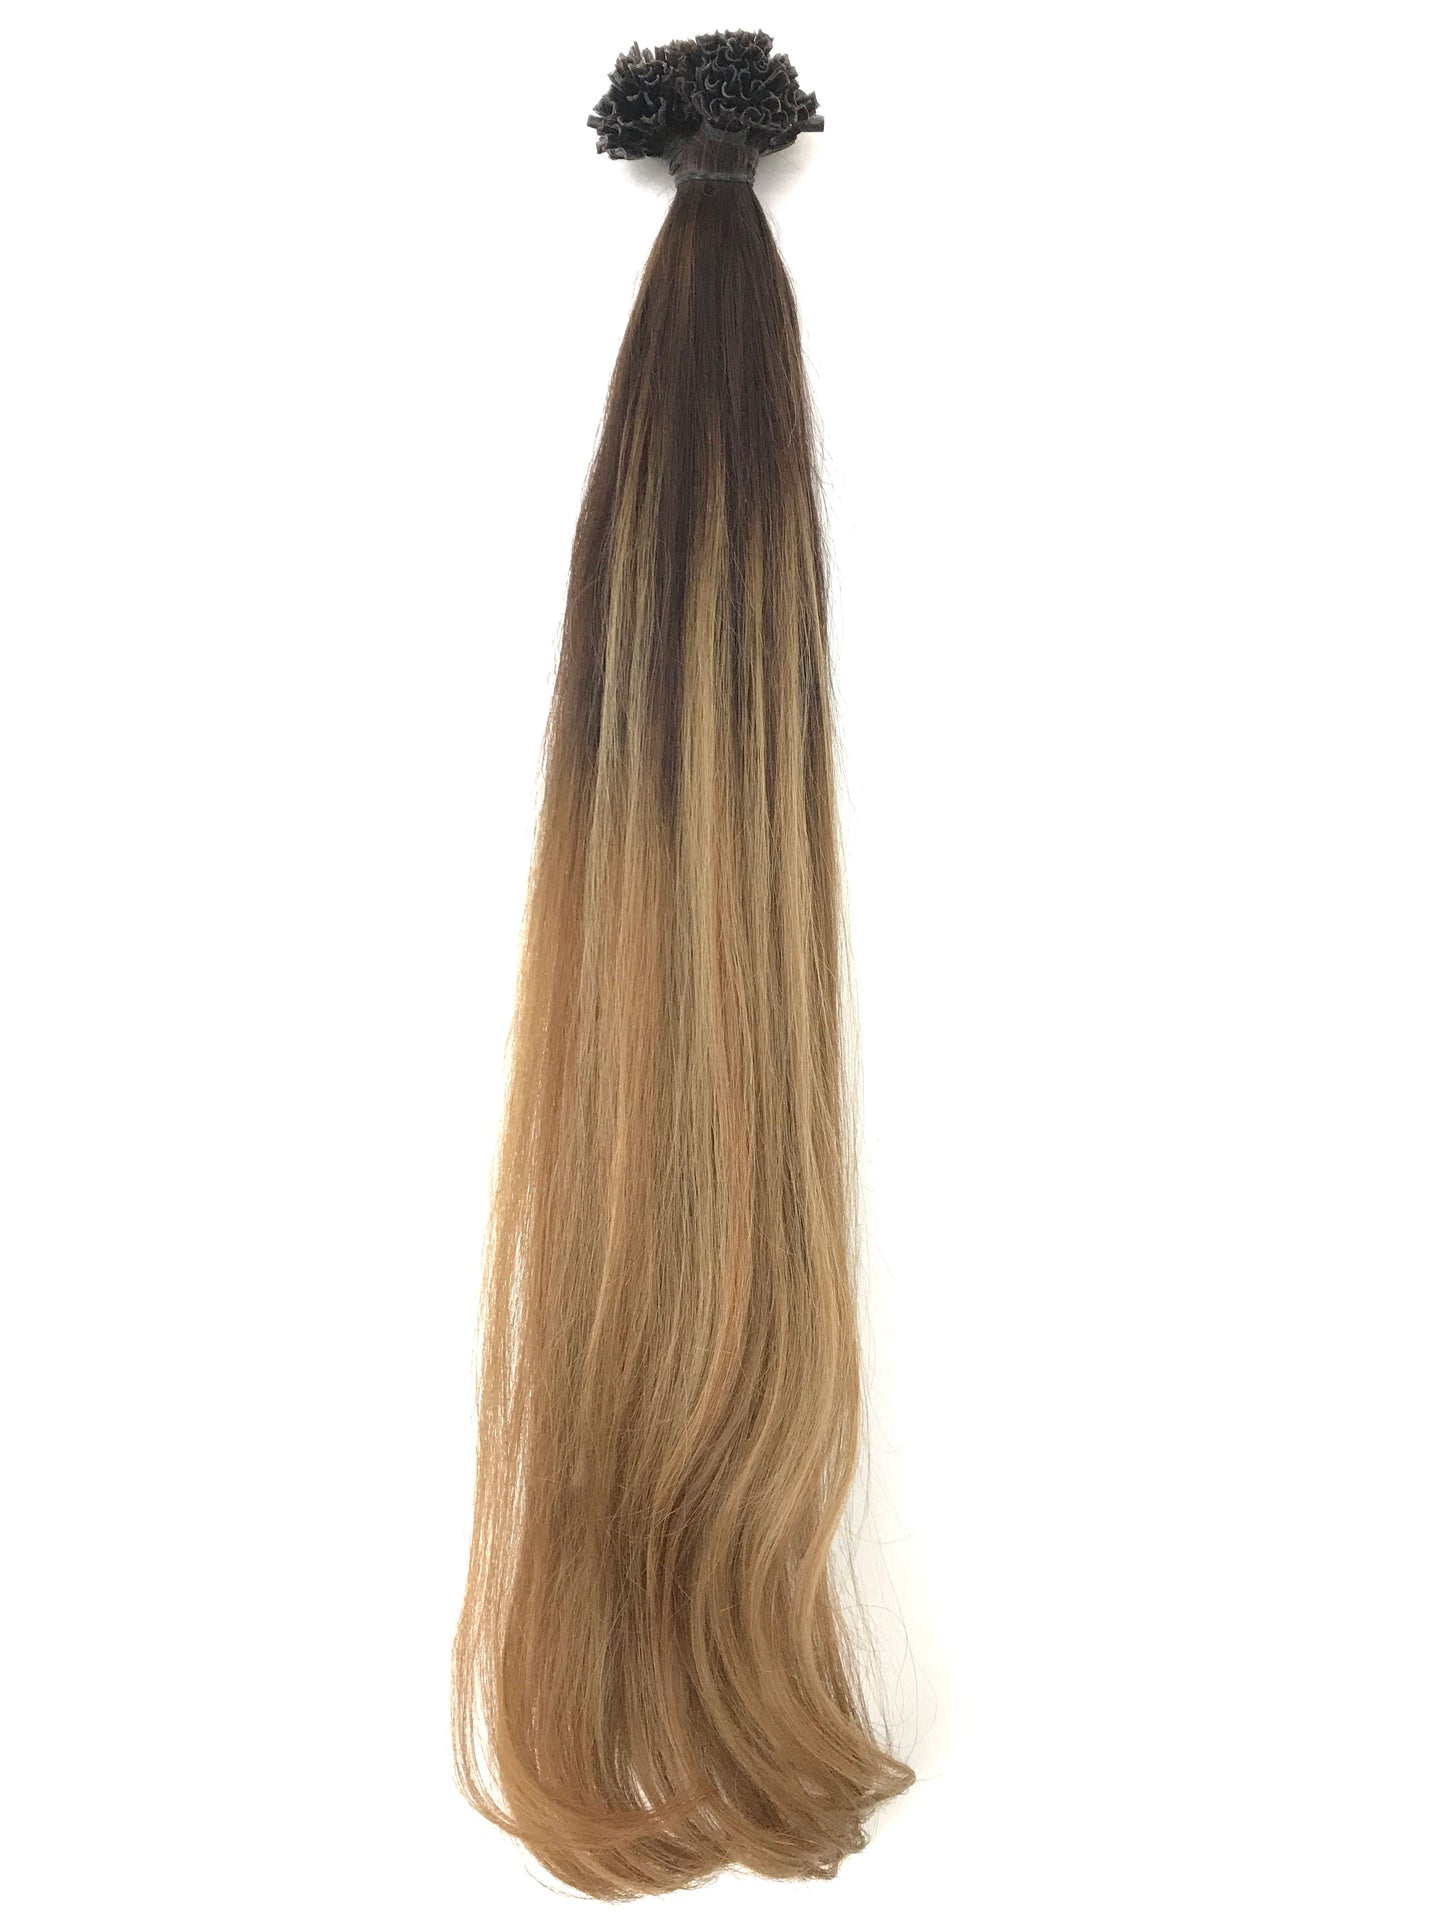 תוספות שיער אירופיות Balayage ombre-שיער ויופי בתולה, תוספות השיער הטובות ביותר, שיער אנושי בתול אמיתי.